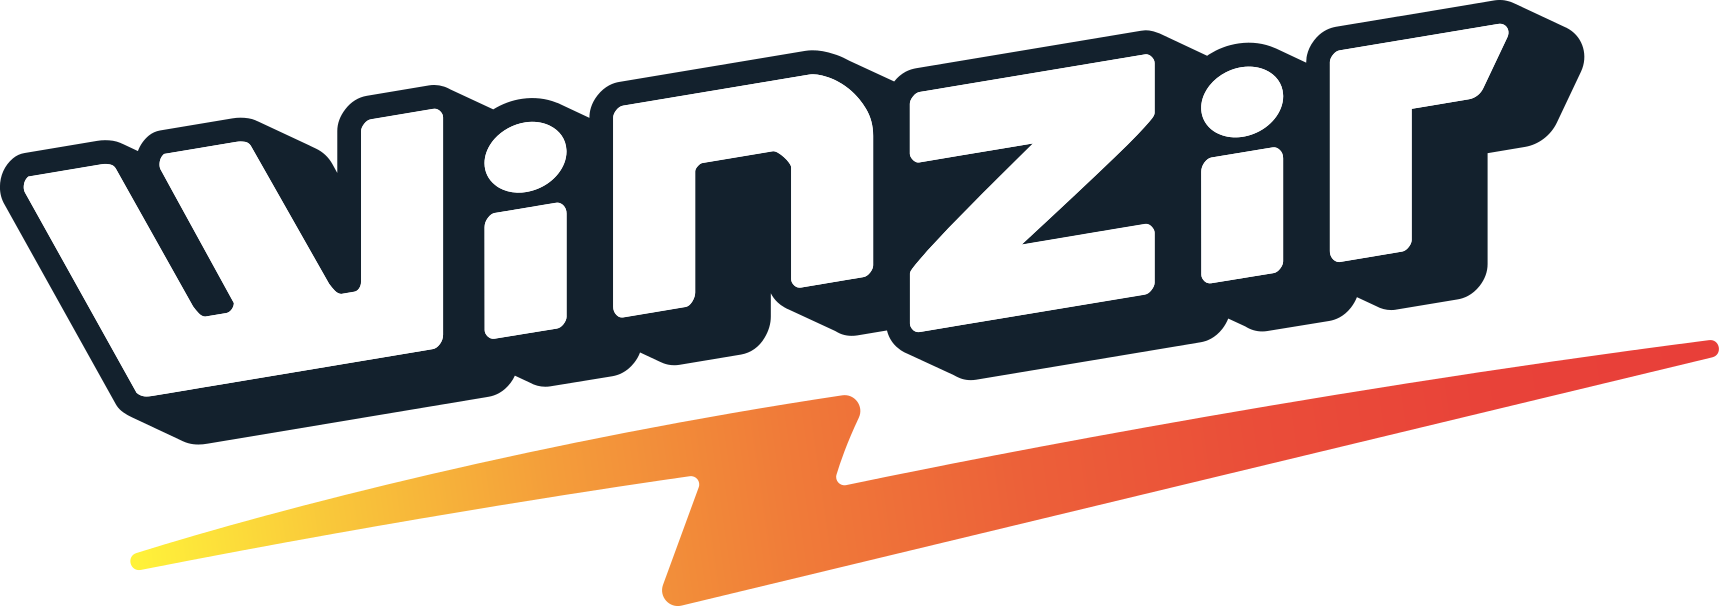 Winzir logo